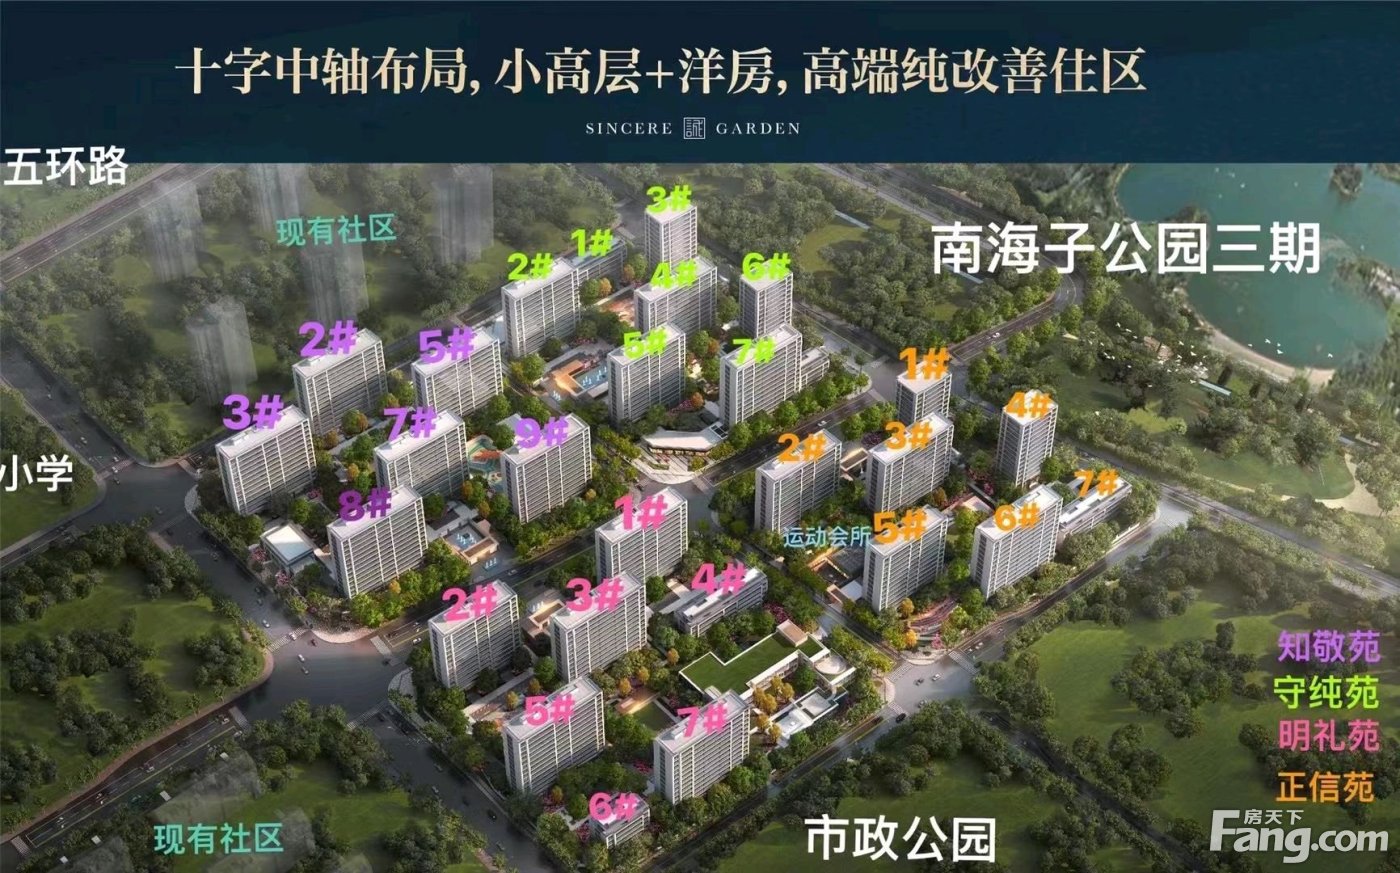 保利绿城·和锦诚园怎么样?看现场置业顾问发布了4条项目新消息-北京